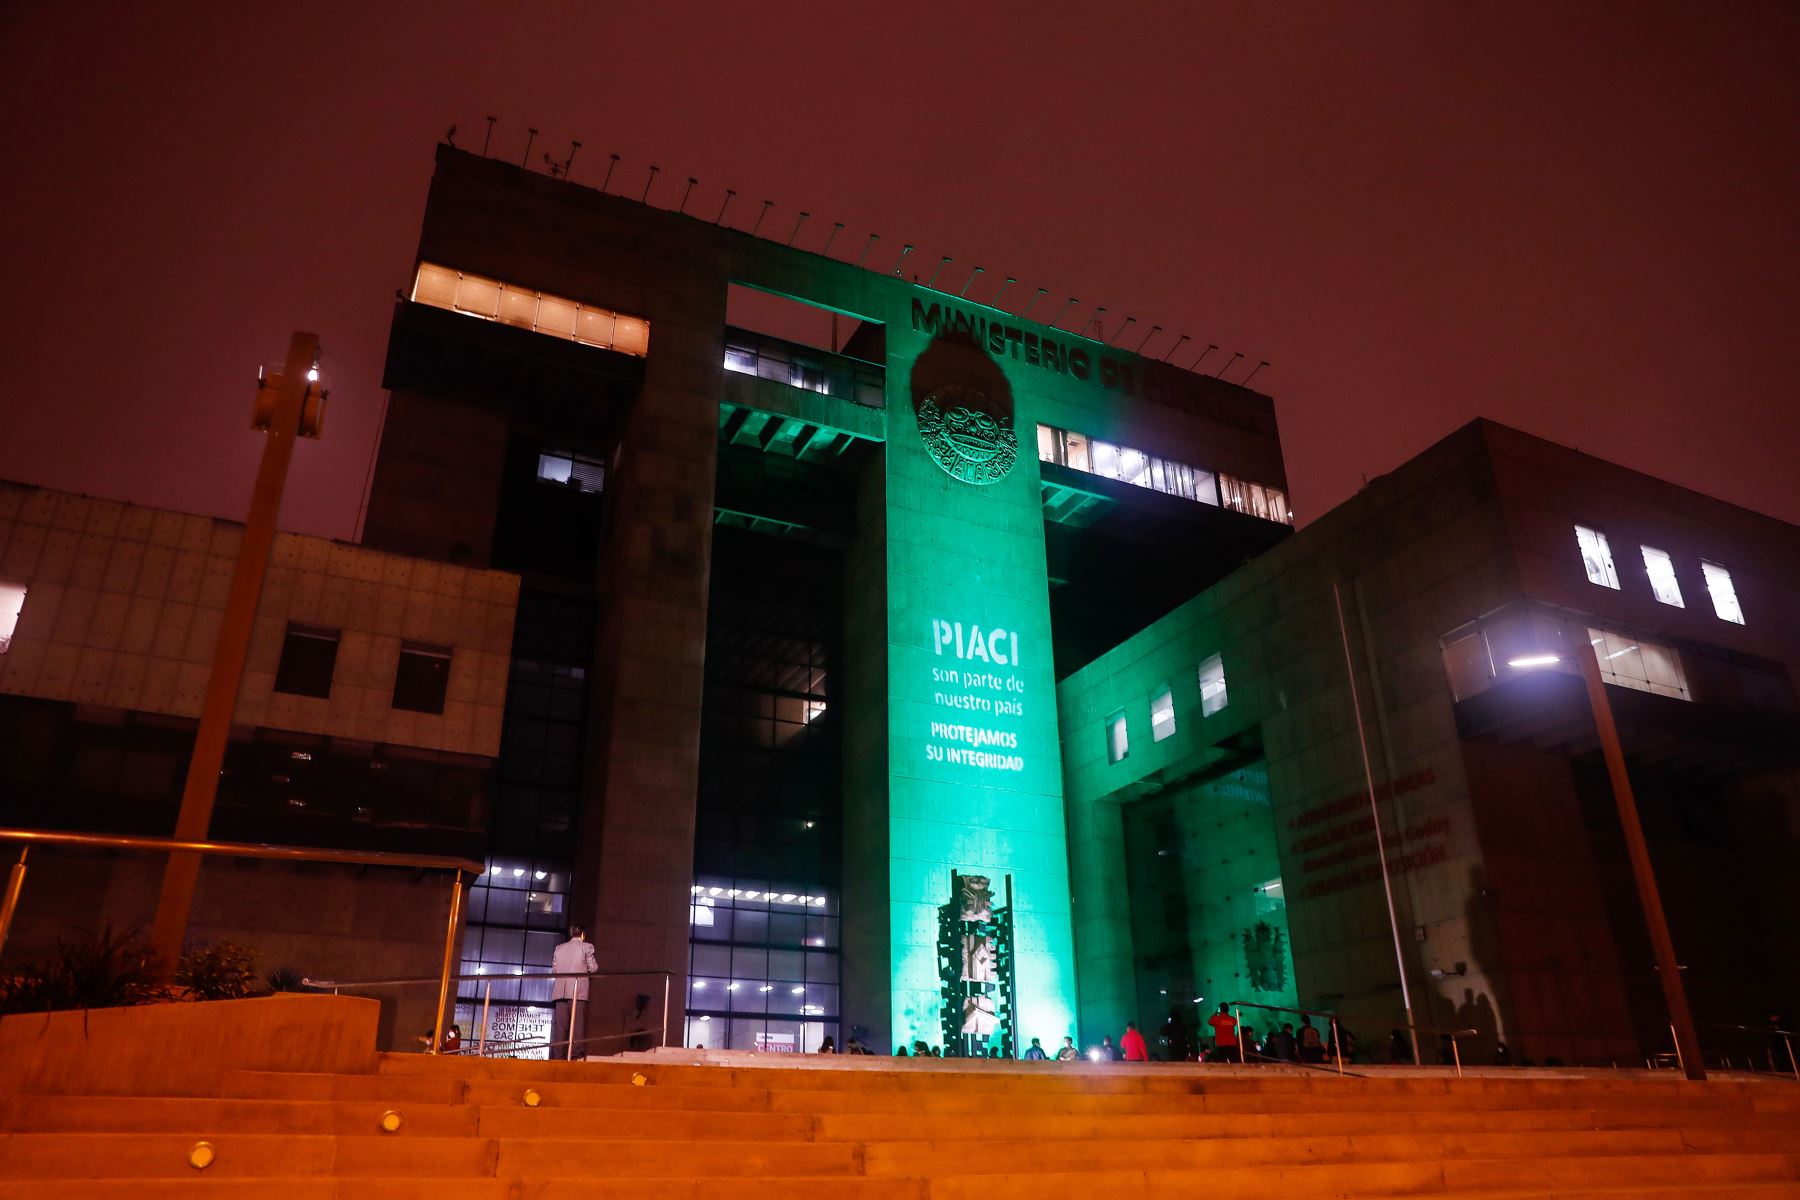 El color verde esperanza, que ilumina la fachada del Ministerio de Cultura, representa los bosques, la Amazonía. Es un símbolo para manifestar, reafirmar y concientizar sobre la existencia de los PIACI. Foto: ANDINA/Renato Pajuelo